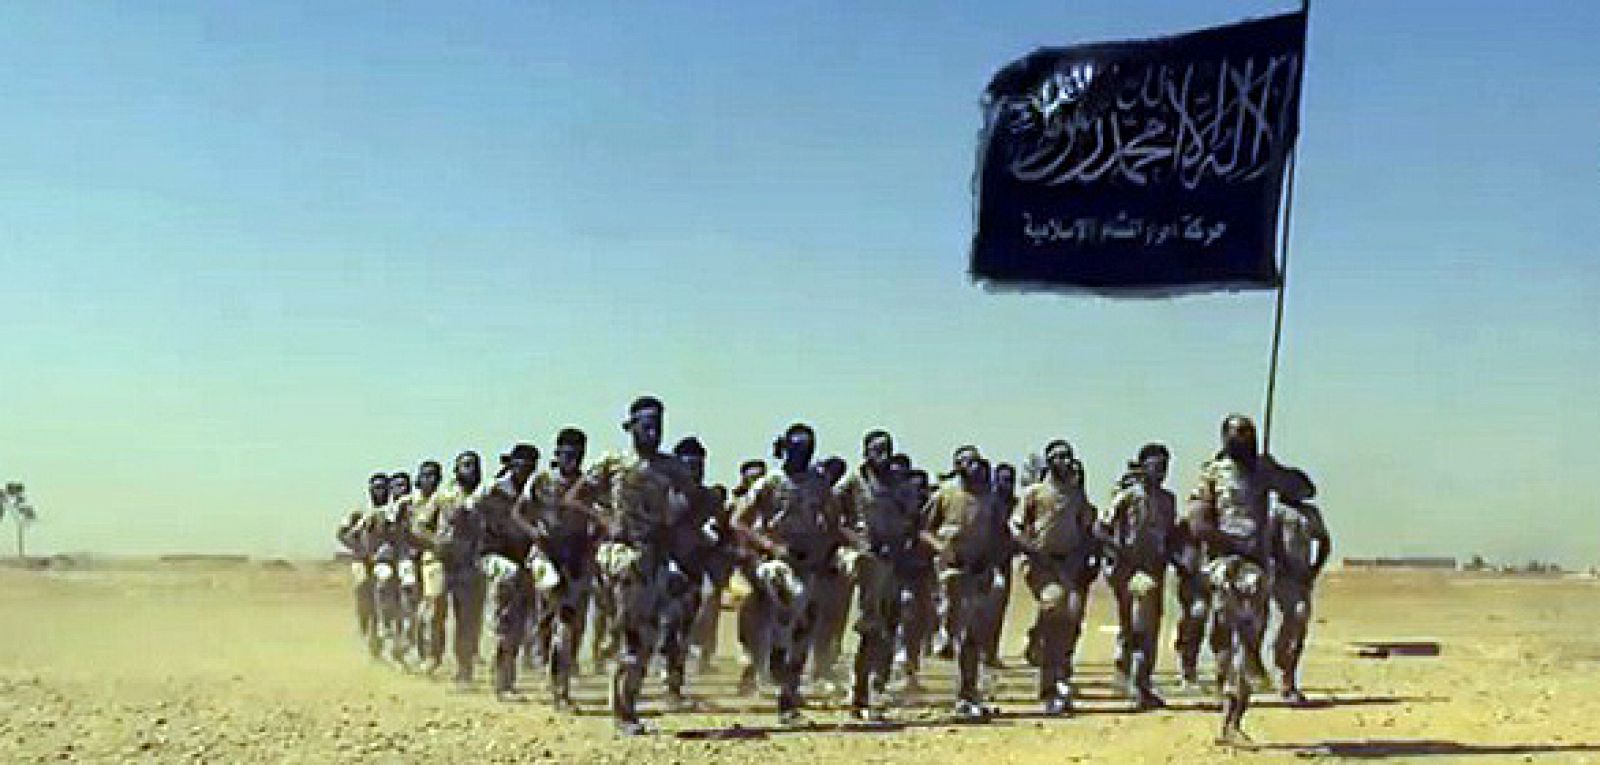 Imágen de archivo de un vídeo de propaganda yihadista difundido por Internet